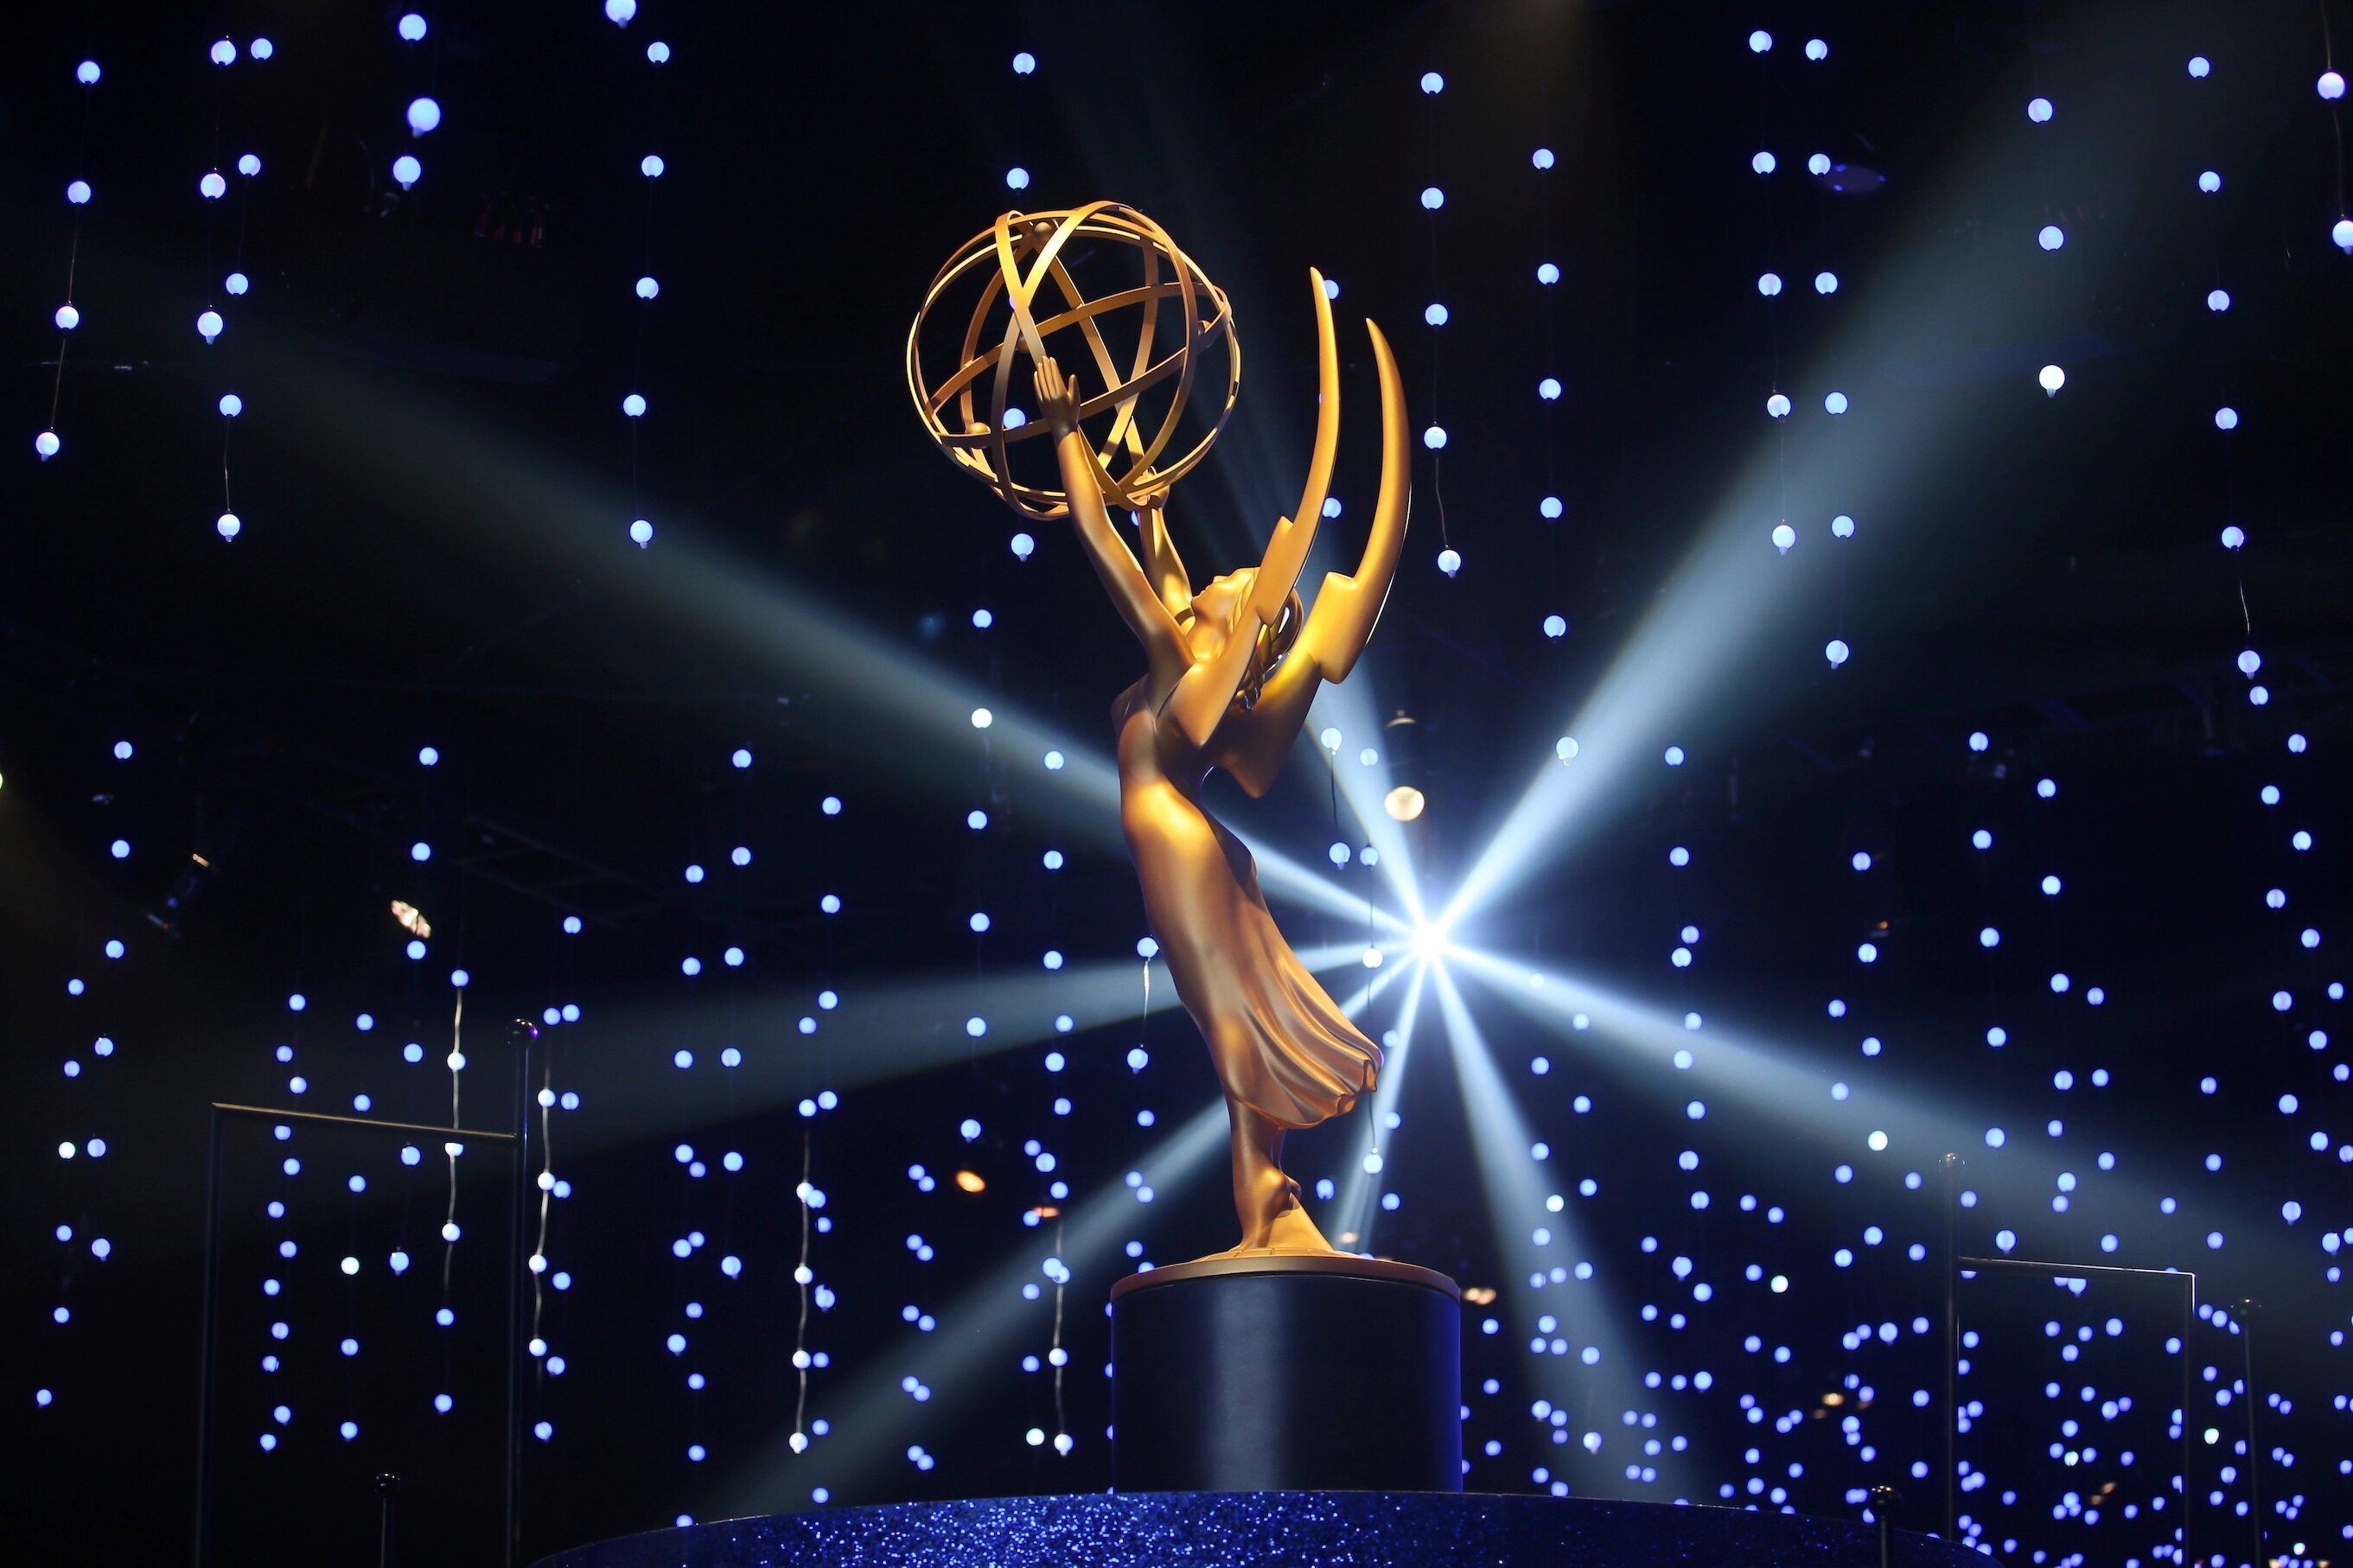 Els Premis Emmy ja tenen nova data després de ser ajornats per la vaga de Hollywood